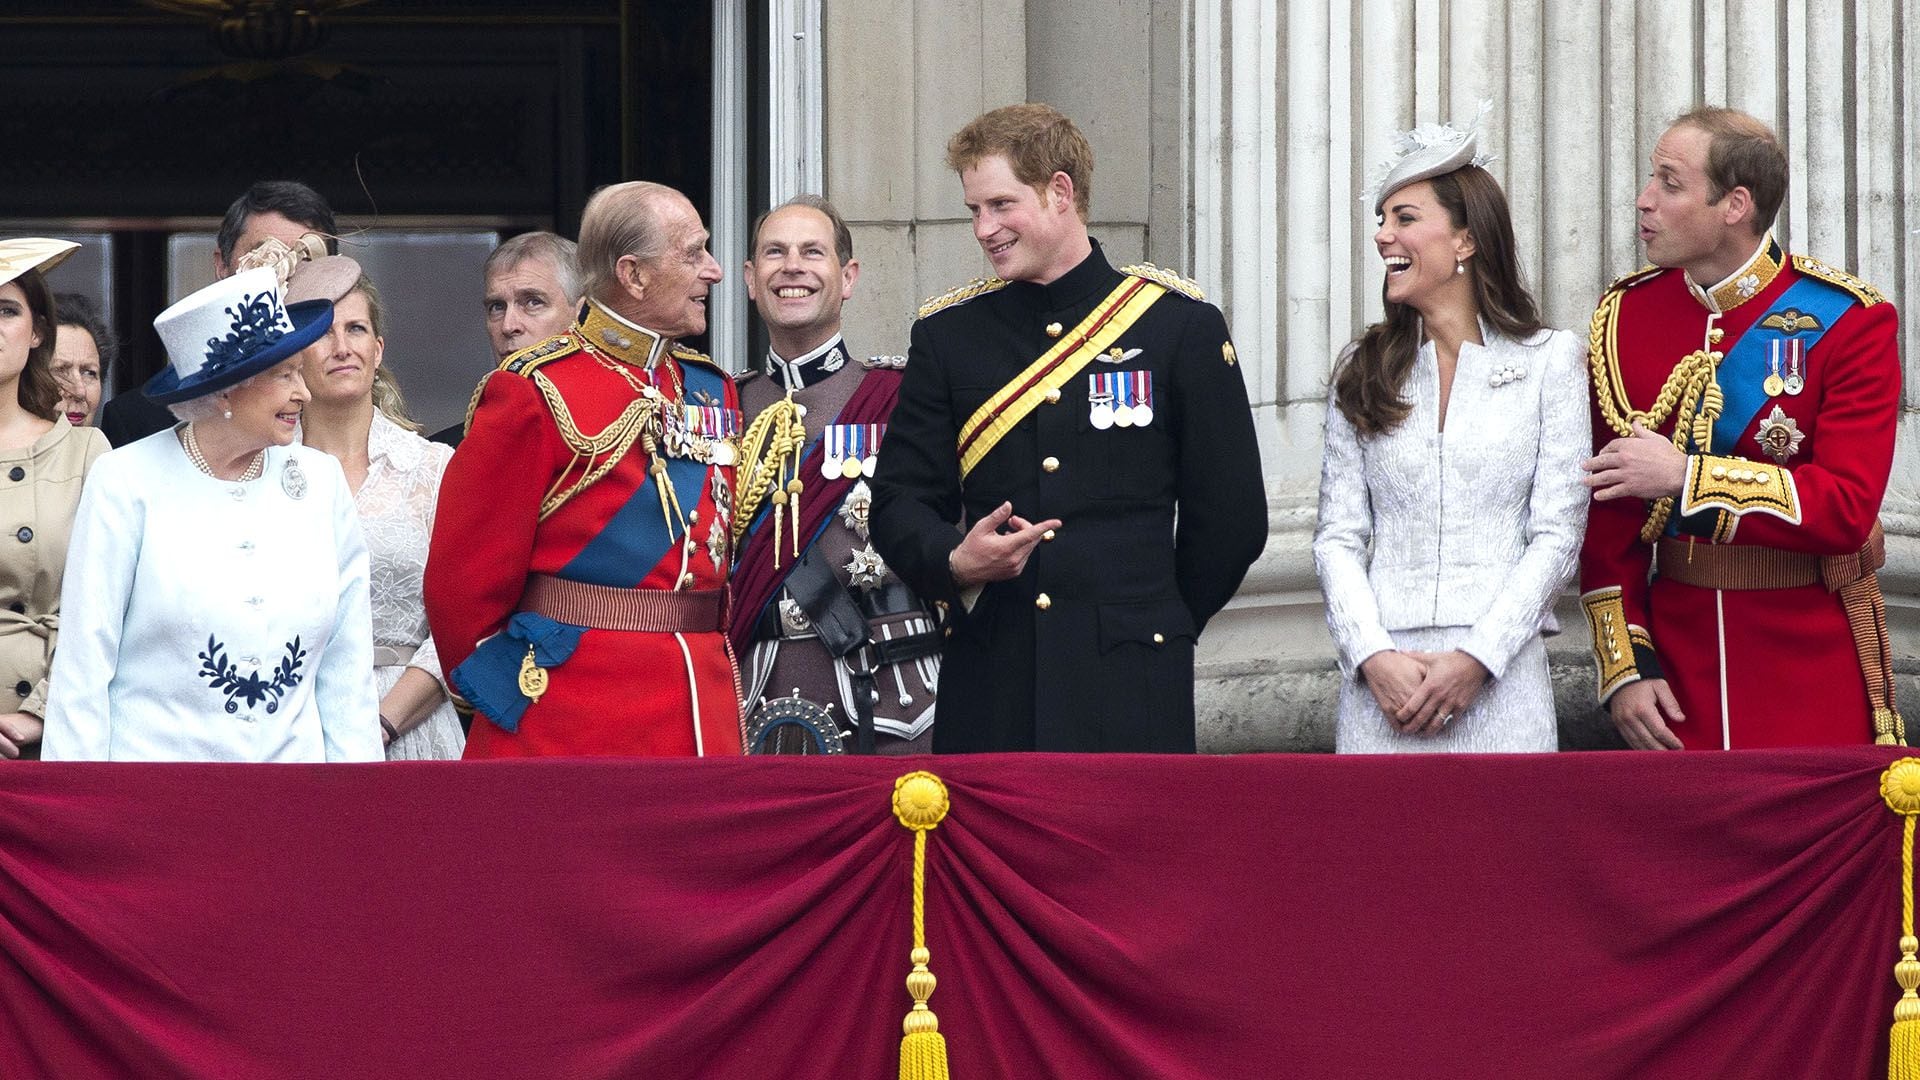 14 de junio de 2014. La reina Isabel II, Sophie, condesa de Wessex, el príncipe Felipe, el príncipe Andrés, el príncipe Eduardo, el príncipe Harry, la duquesa de Cambridge y el príncipe William